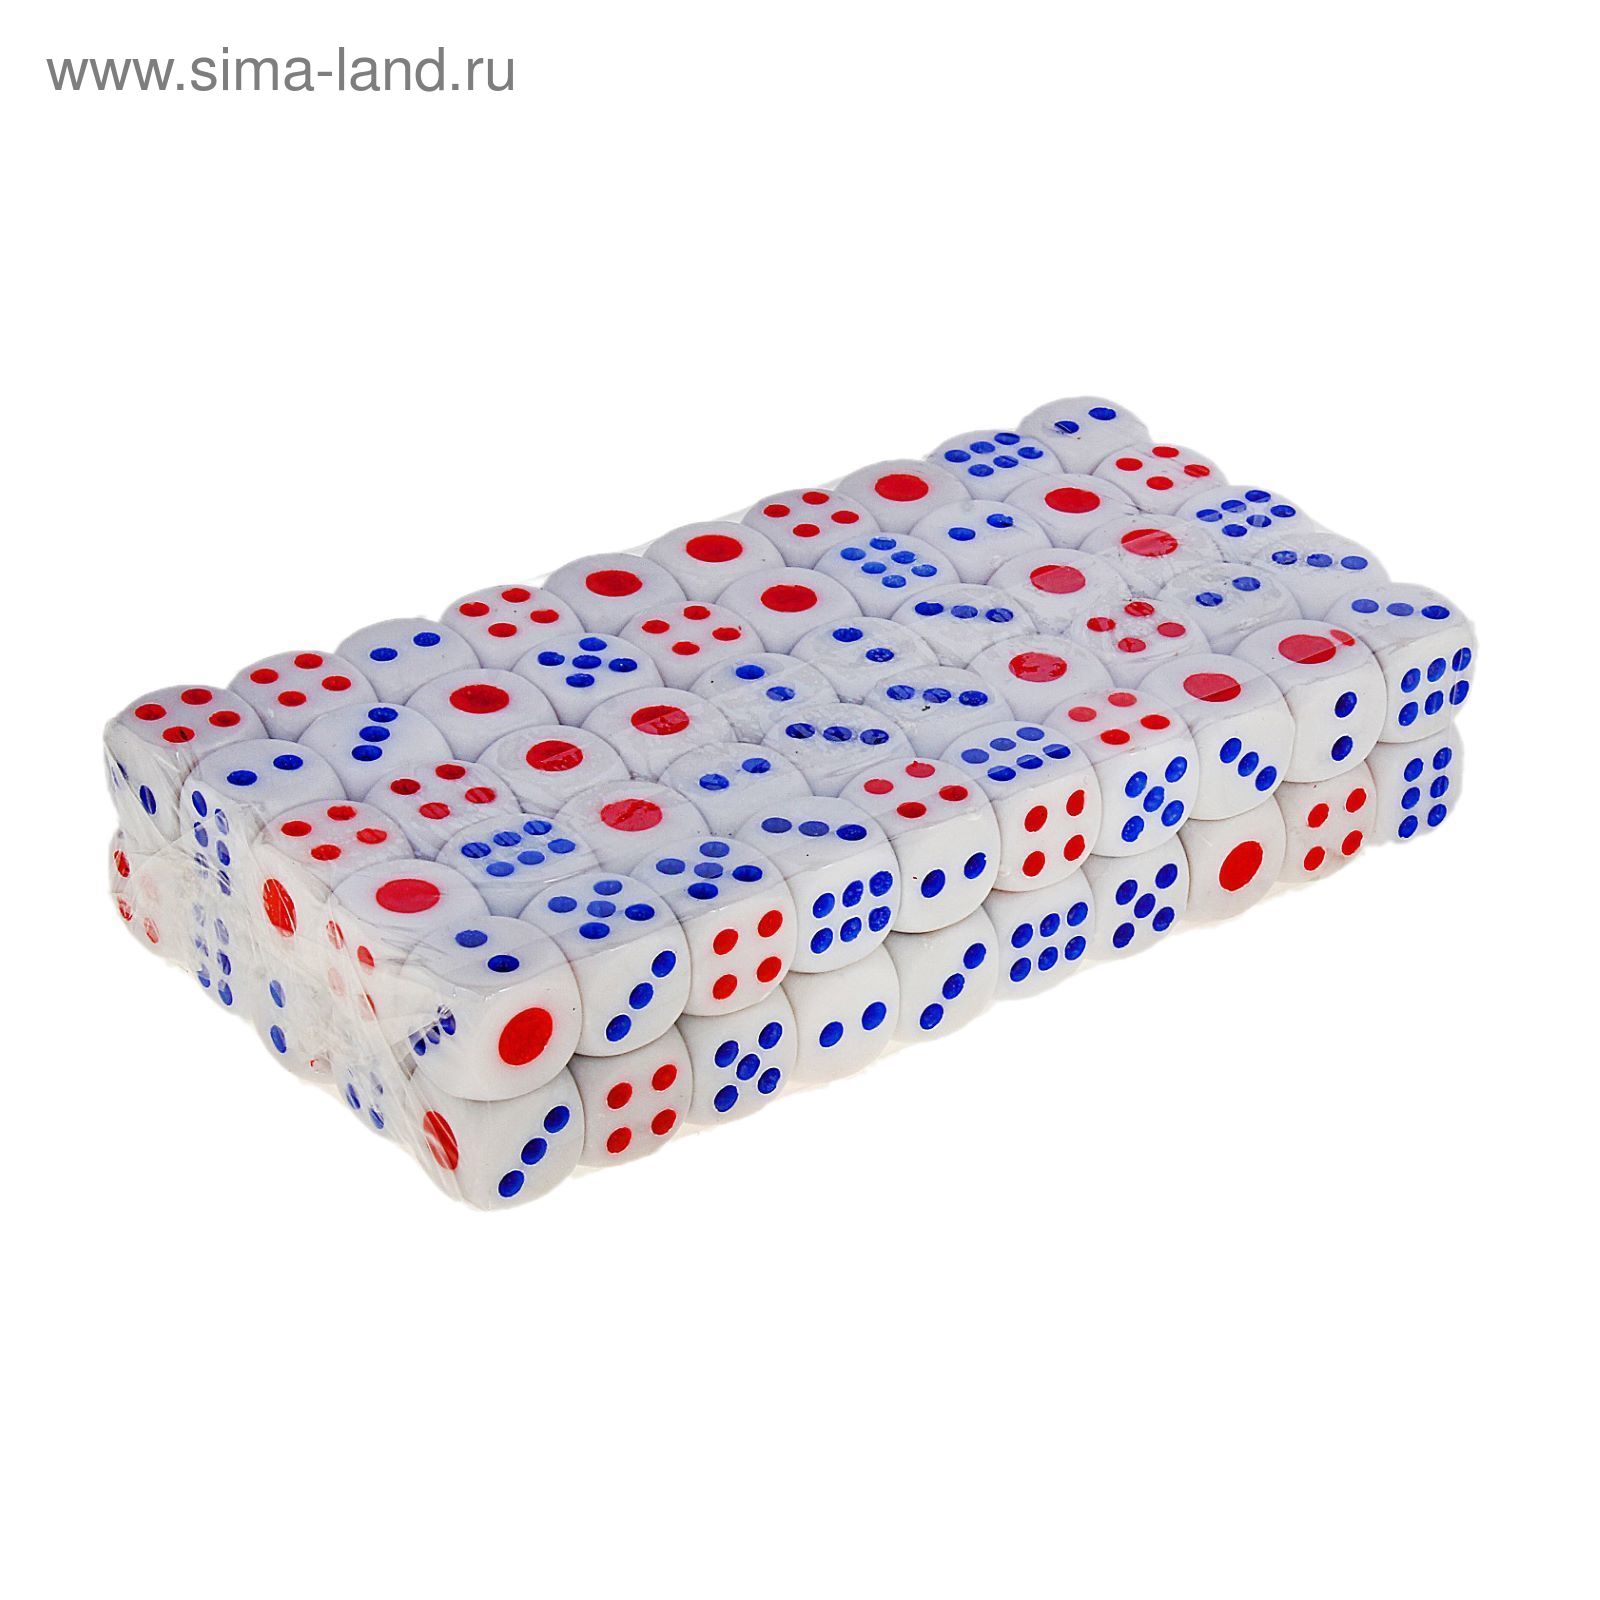 Кости игральные 1 × 1 см, белые с цветными точками, фасовка 100 шт.